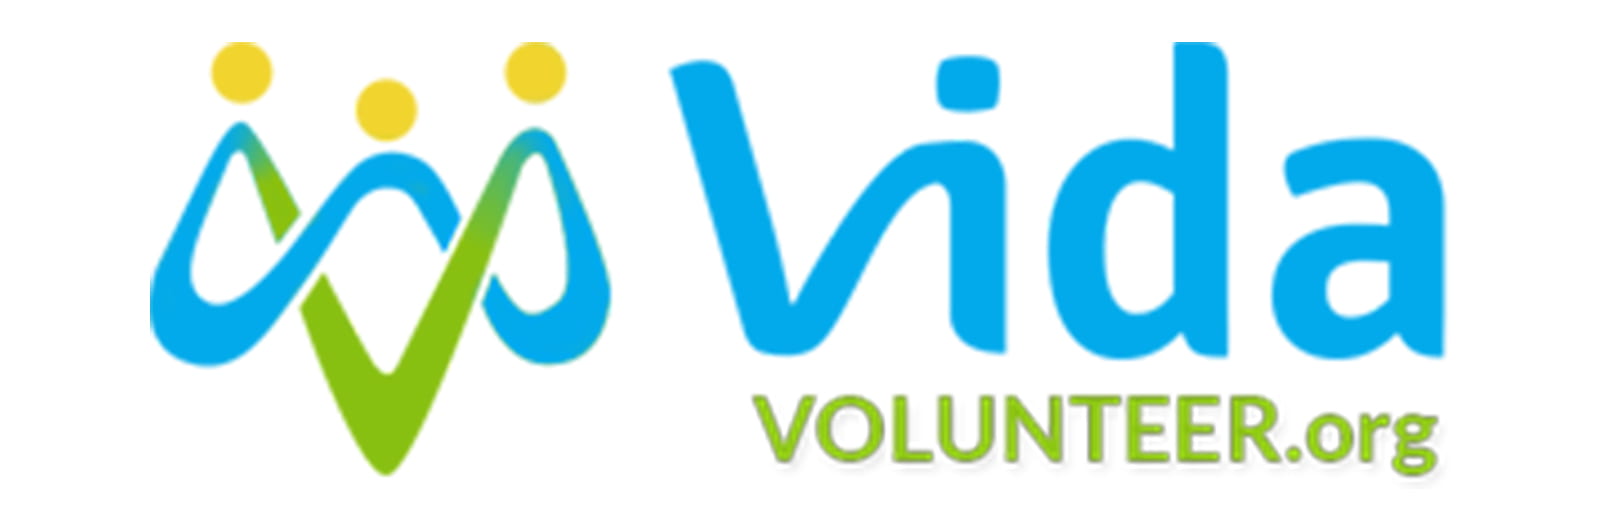 Text reads "Vida volunteer.org"